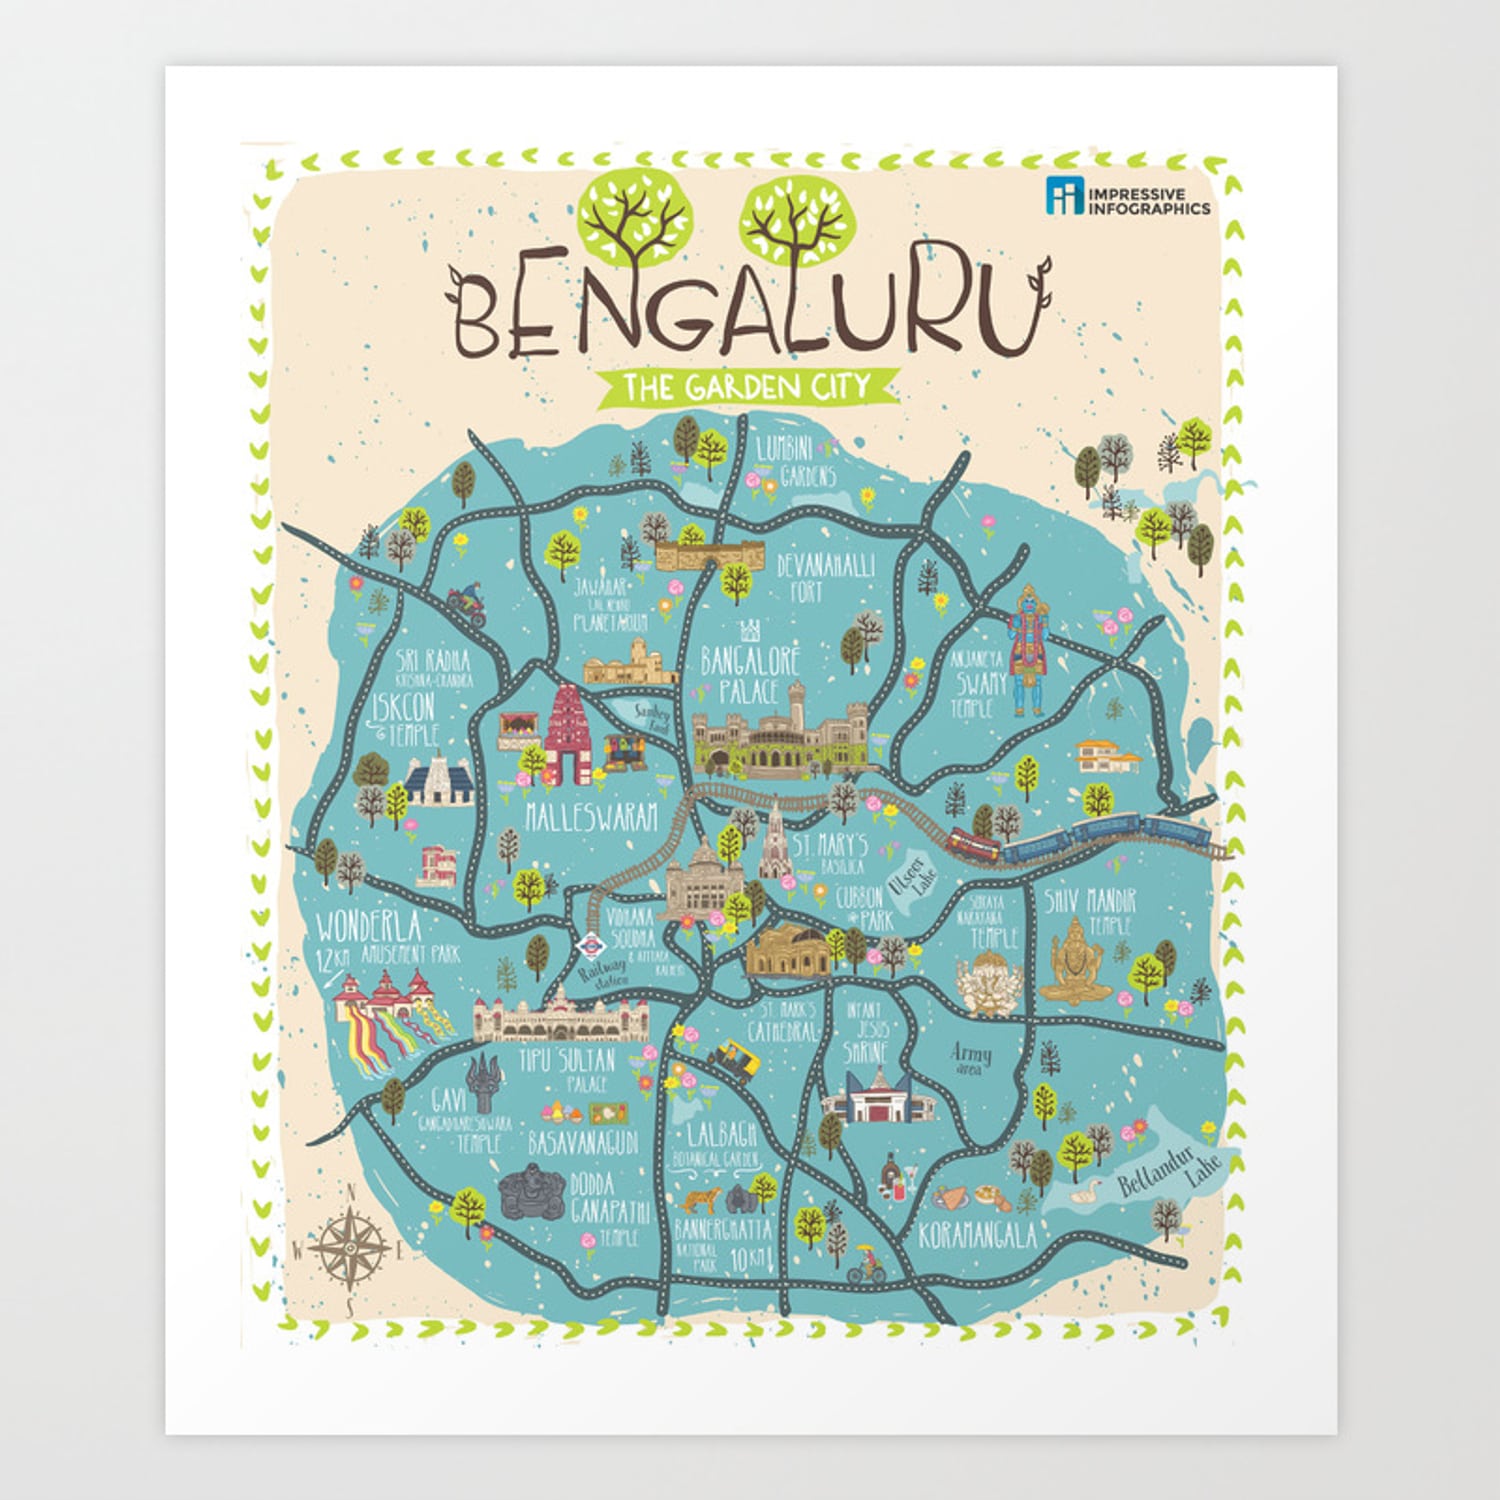 Bangalore city map